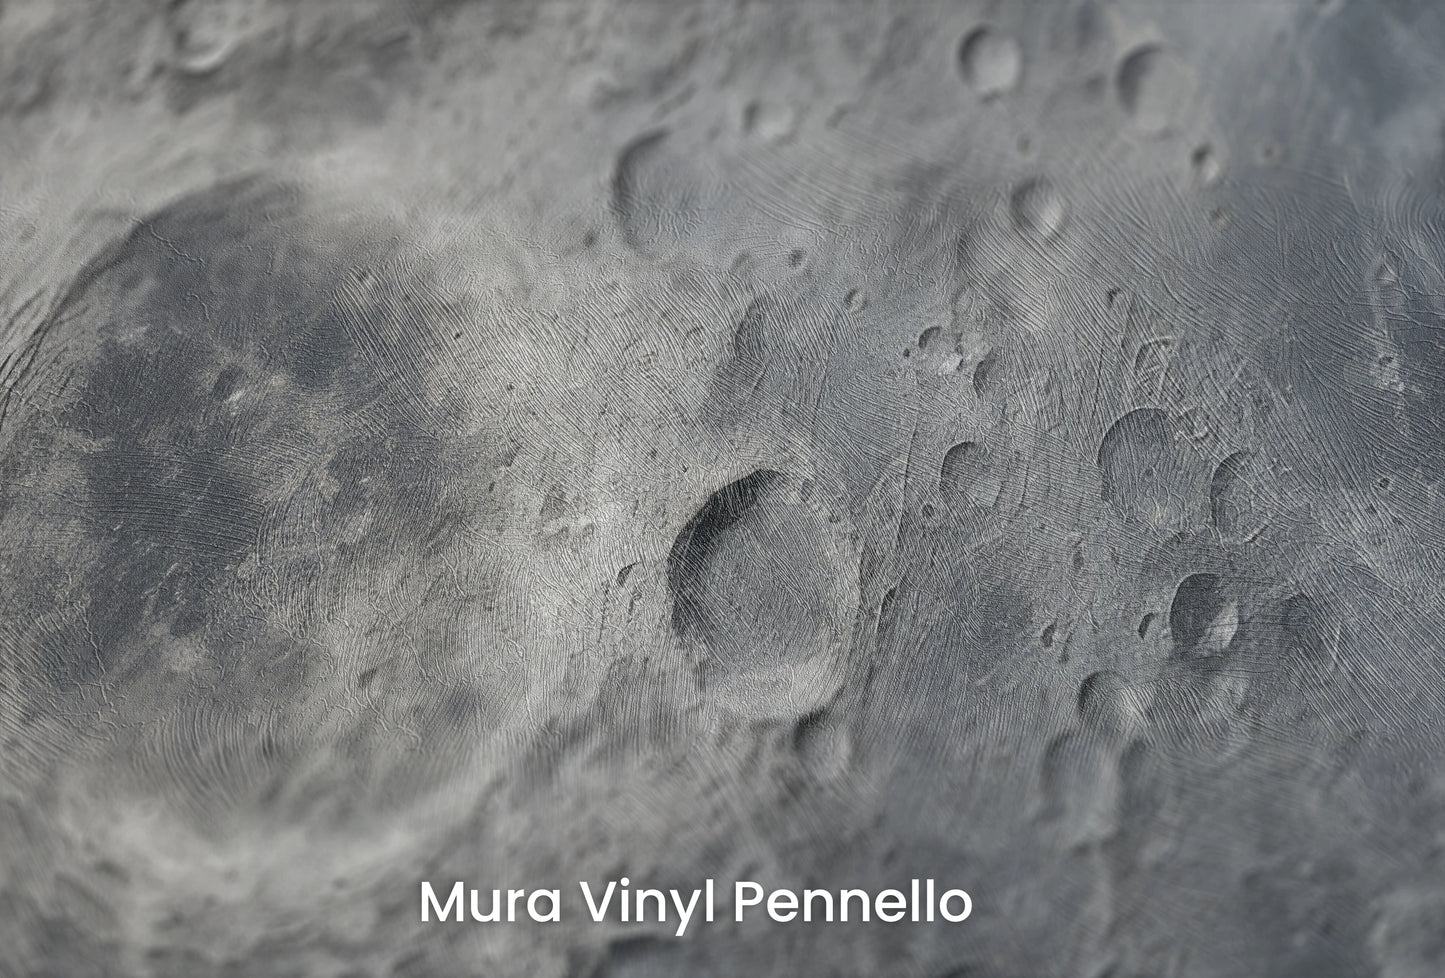 Zbliżenie na artystyczną fototapetę o nazwie Lunar Silence #2 na podłożu Mura Vinyl Pennello - faktura pociągnięć pędzla malarskiego.